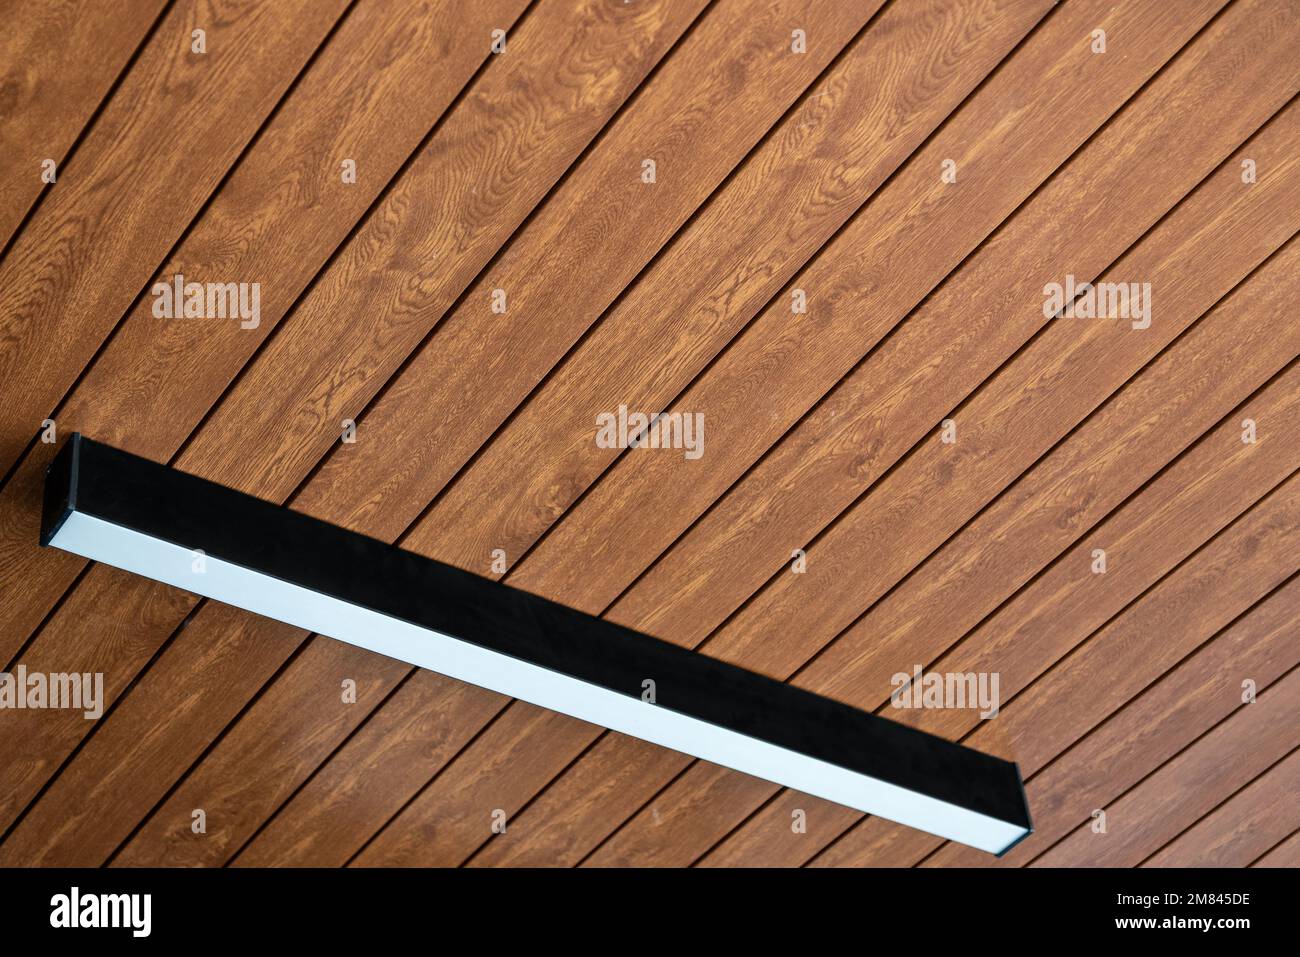 Pannello da soffitto in PVC rivestito in vinile simile al legno con illuminazione moderna su di esso Foto Stock